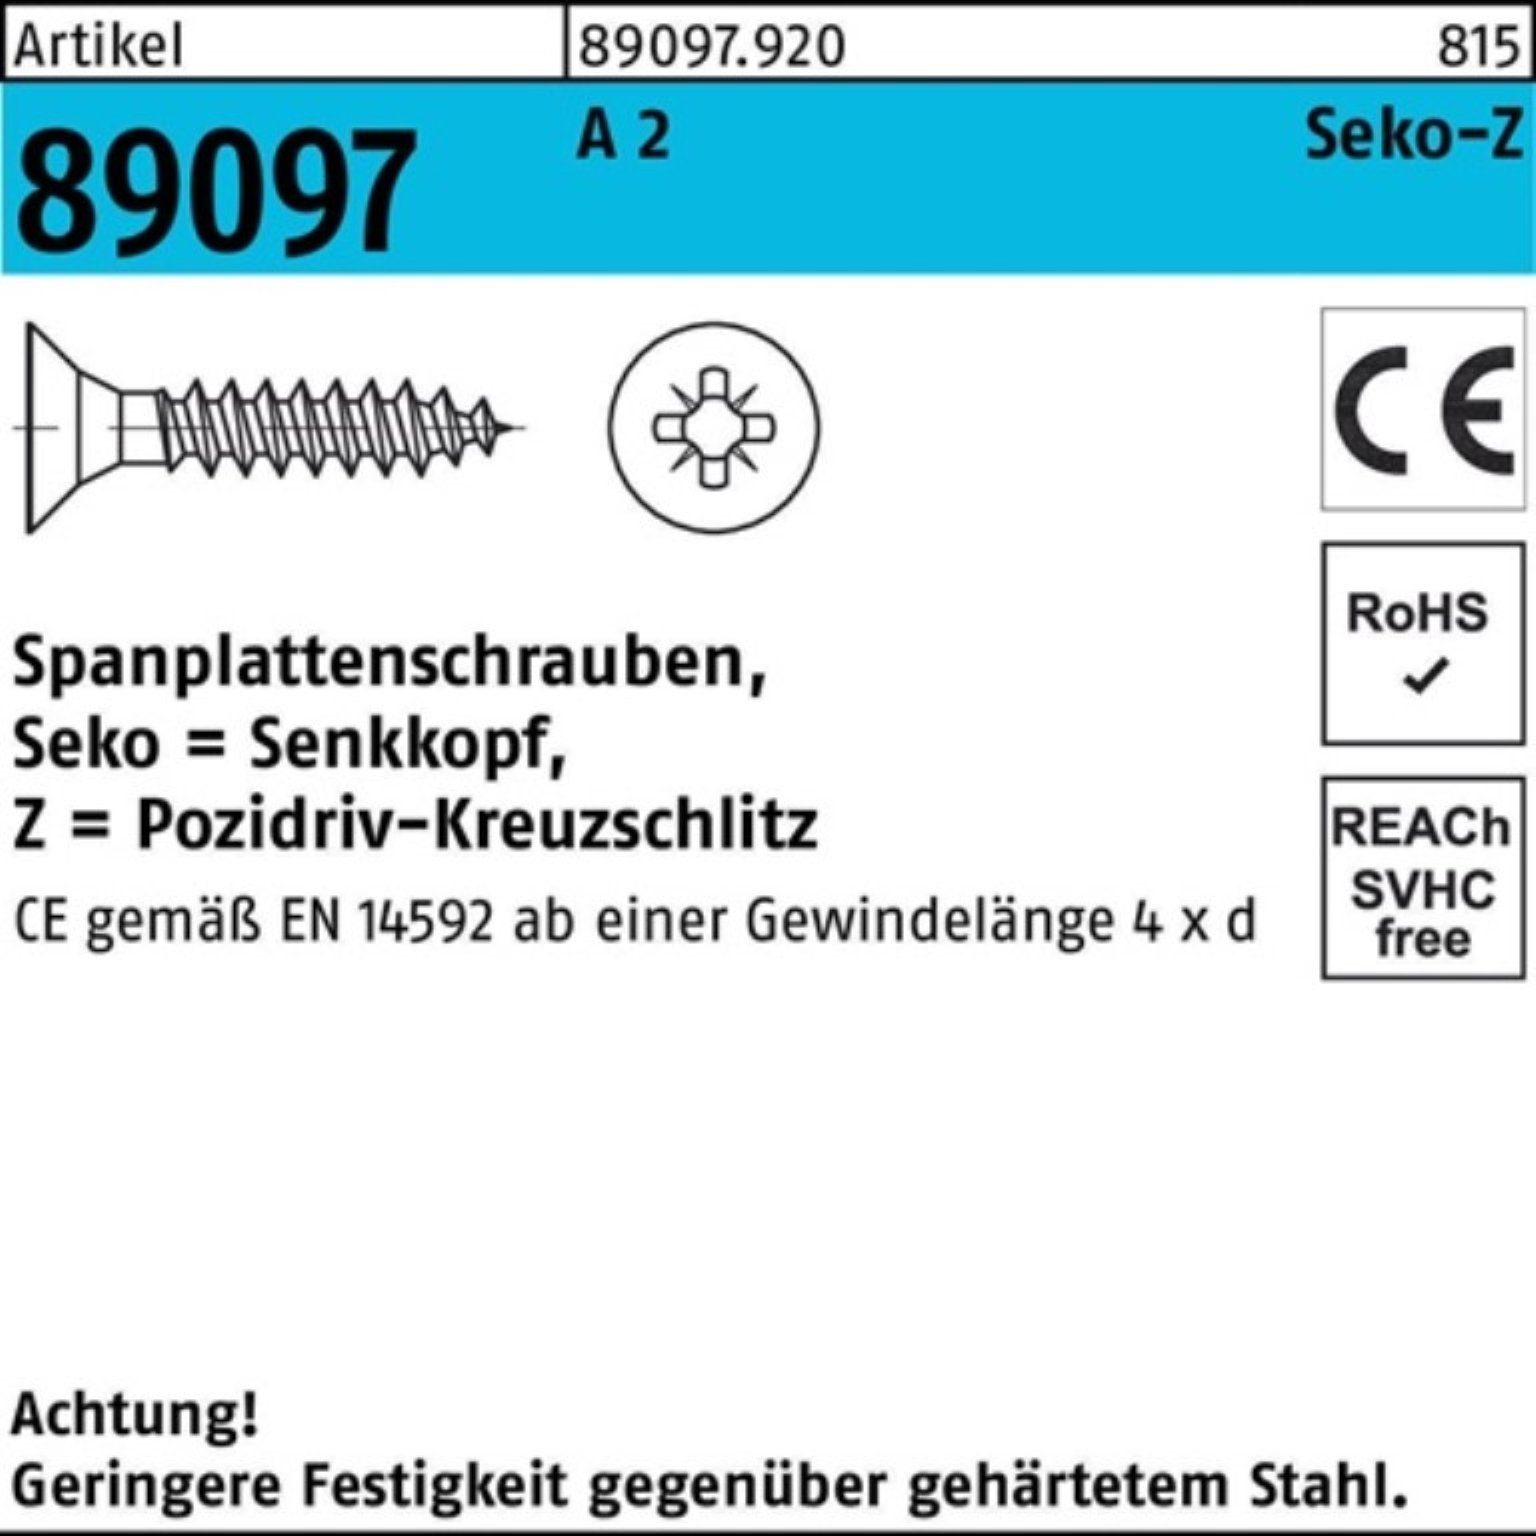 Reyher Spanplattenschraube St 200er VG 30-Z 200 SEKO 89097 A Pack Spanplattenschraube 2 4,5x PZ R